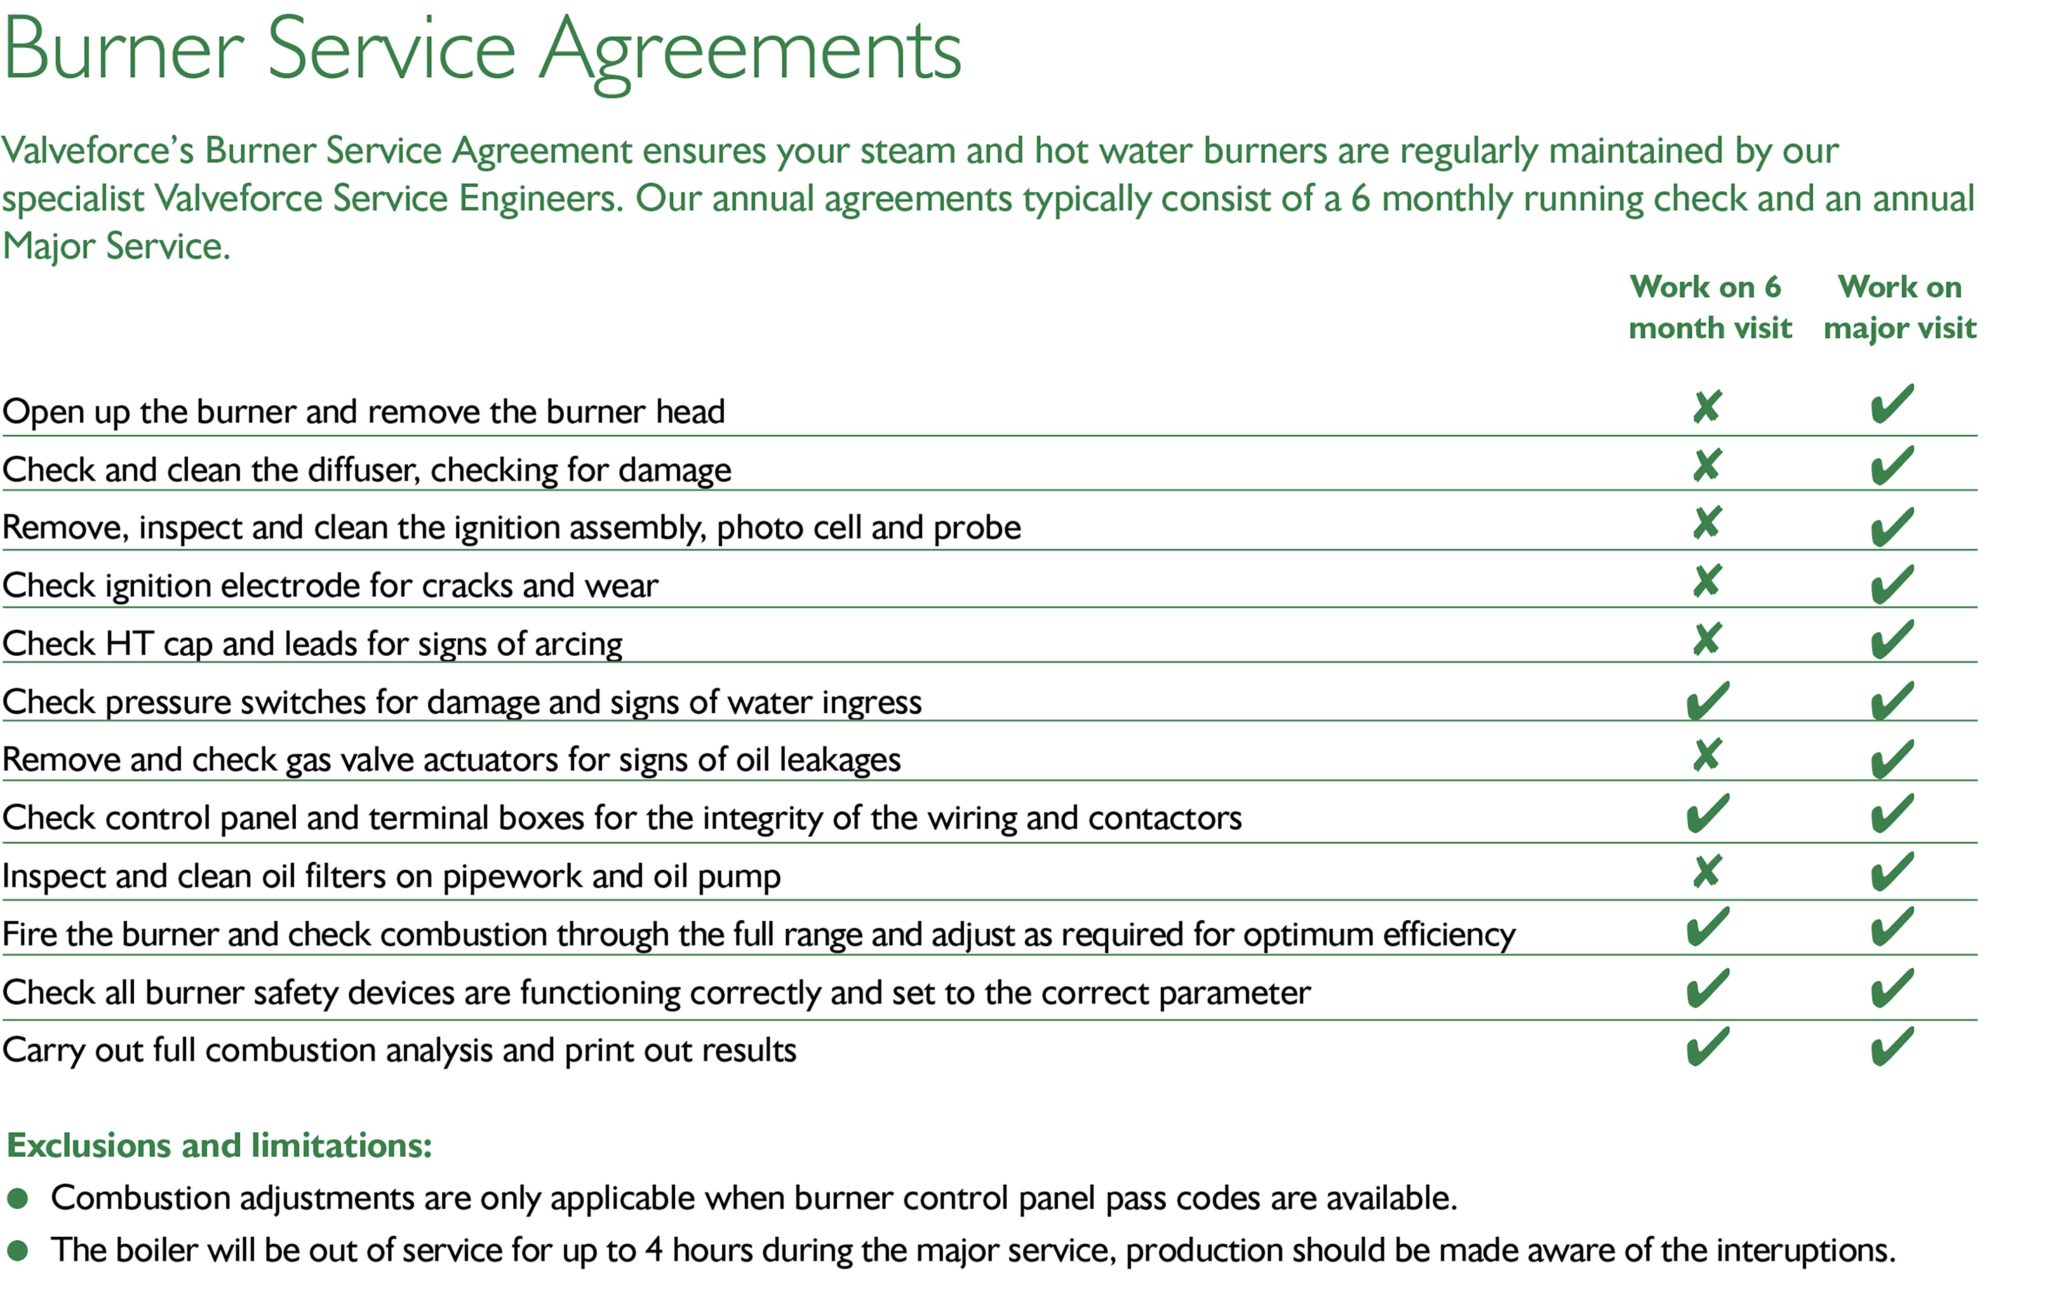 Burner Services Agreement